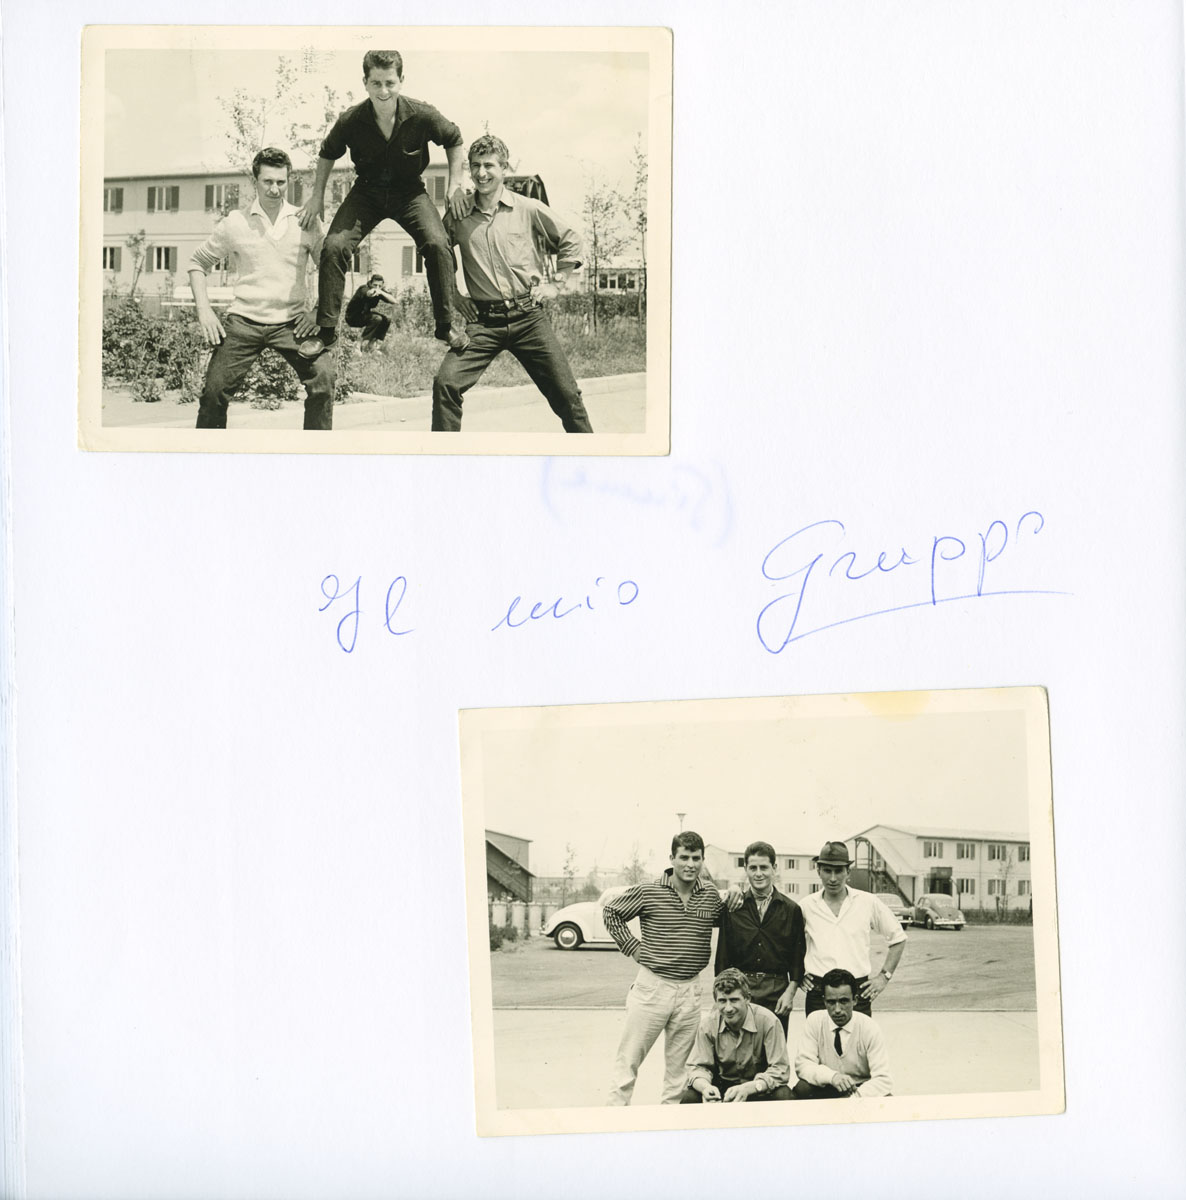 Seite aus Fotoalbum: oben: drei junge Männer, die eine Pyramide bilden; unten: fünf junge Männer auf der Straße, die sich für eine Gruppenaufnahme aufgestellt haben.